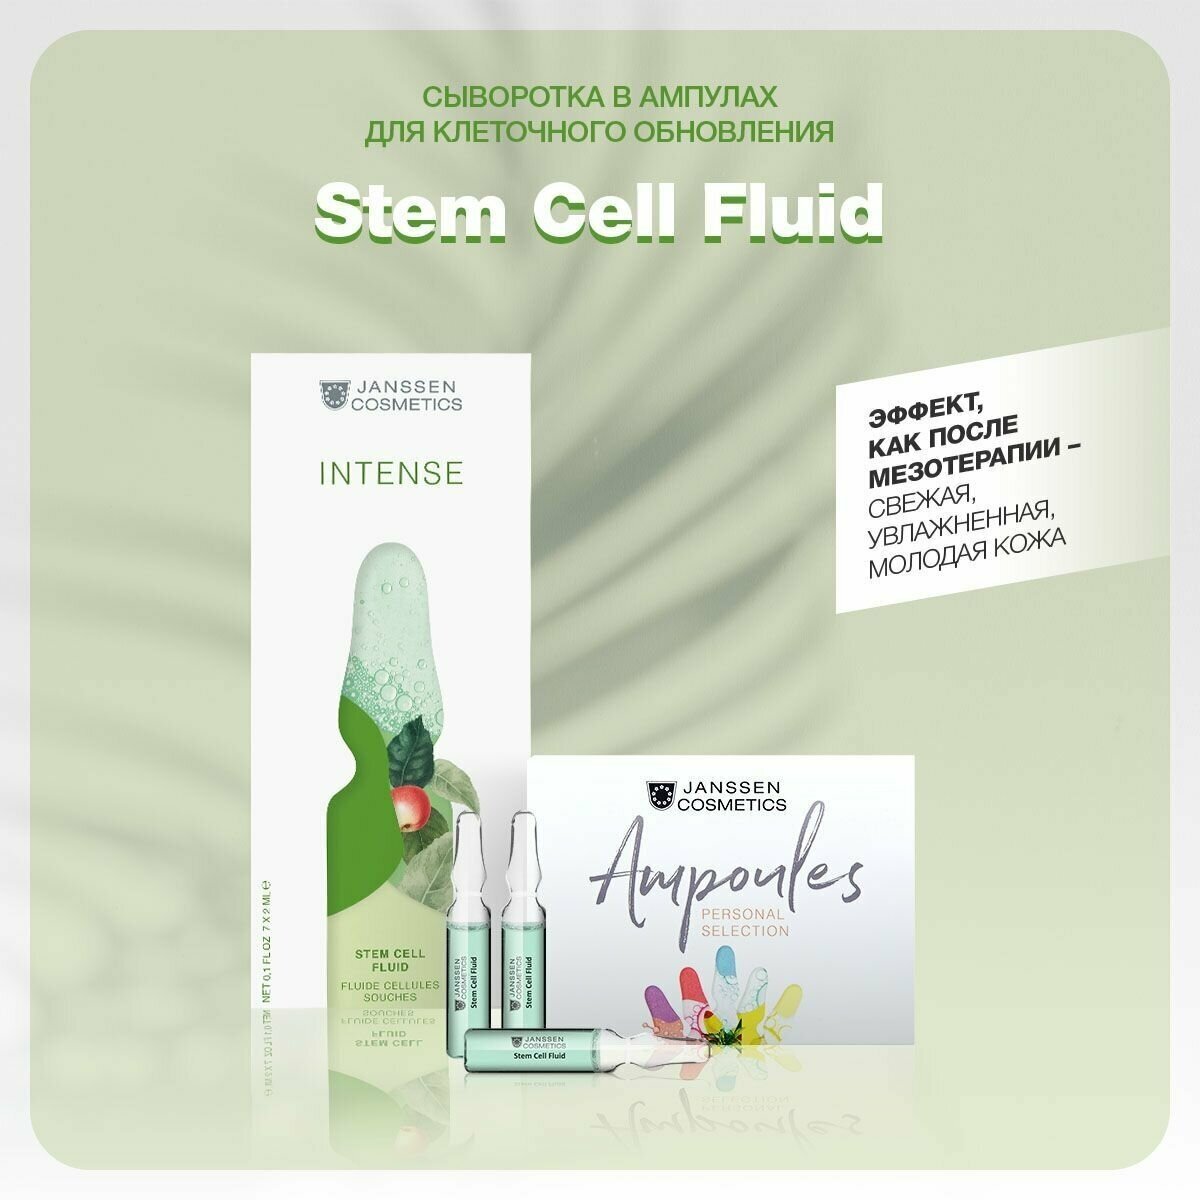 Janssen CosmeticsСыворотка в ампулах для клеточного обновления Stem Cell Fluid, 7 х 2 мл